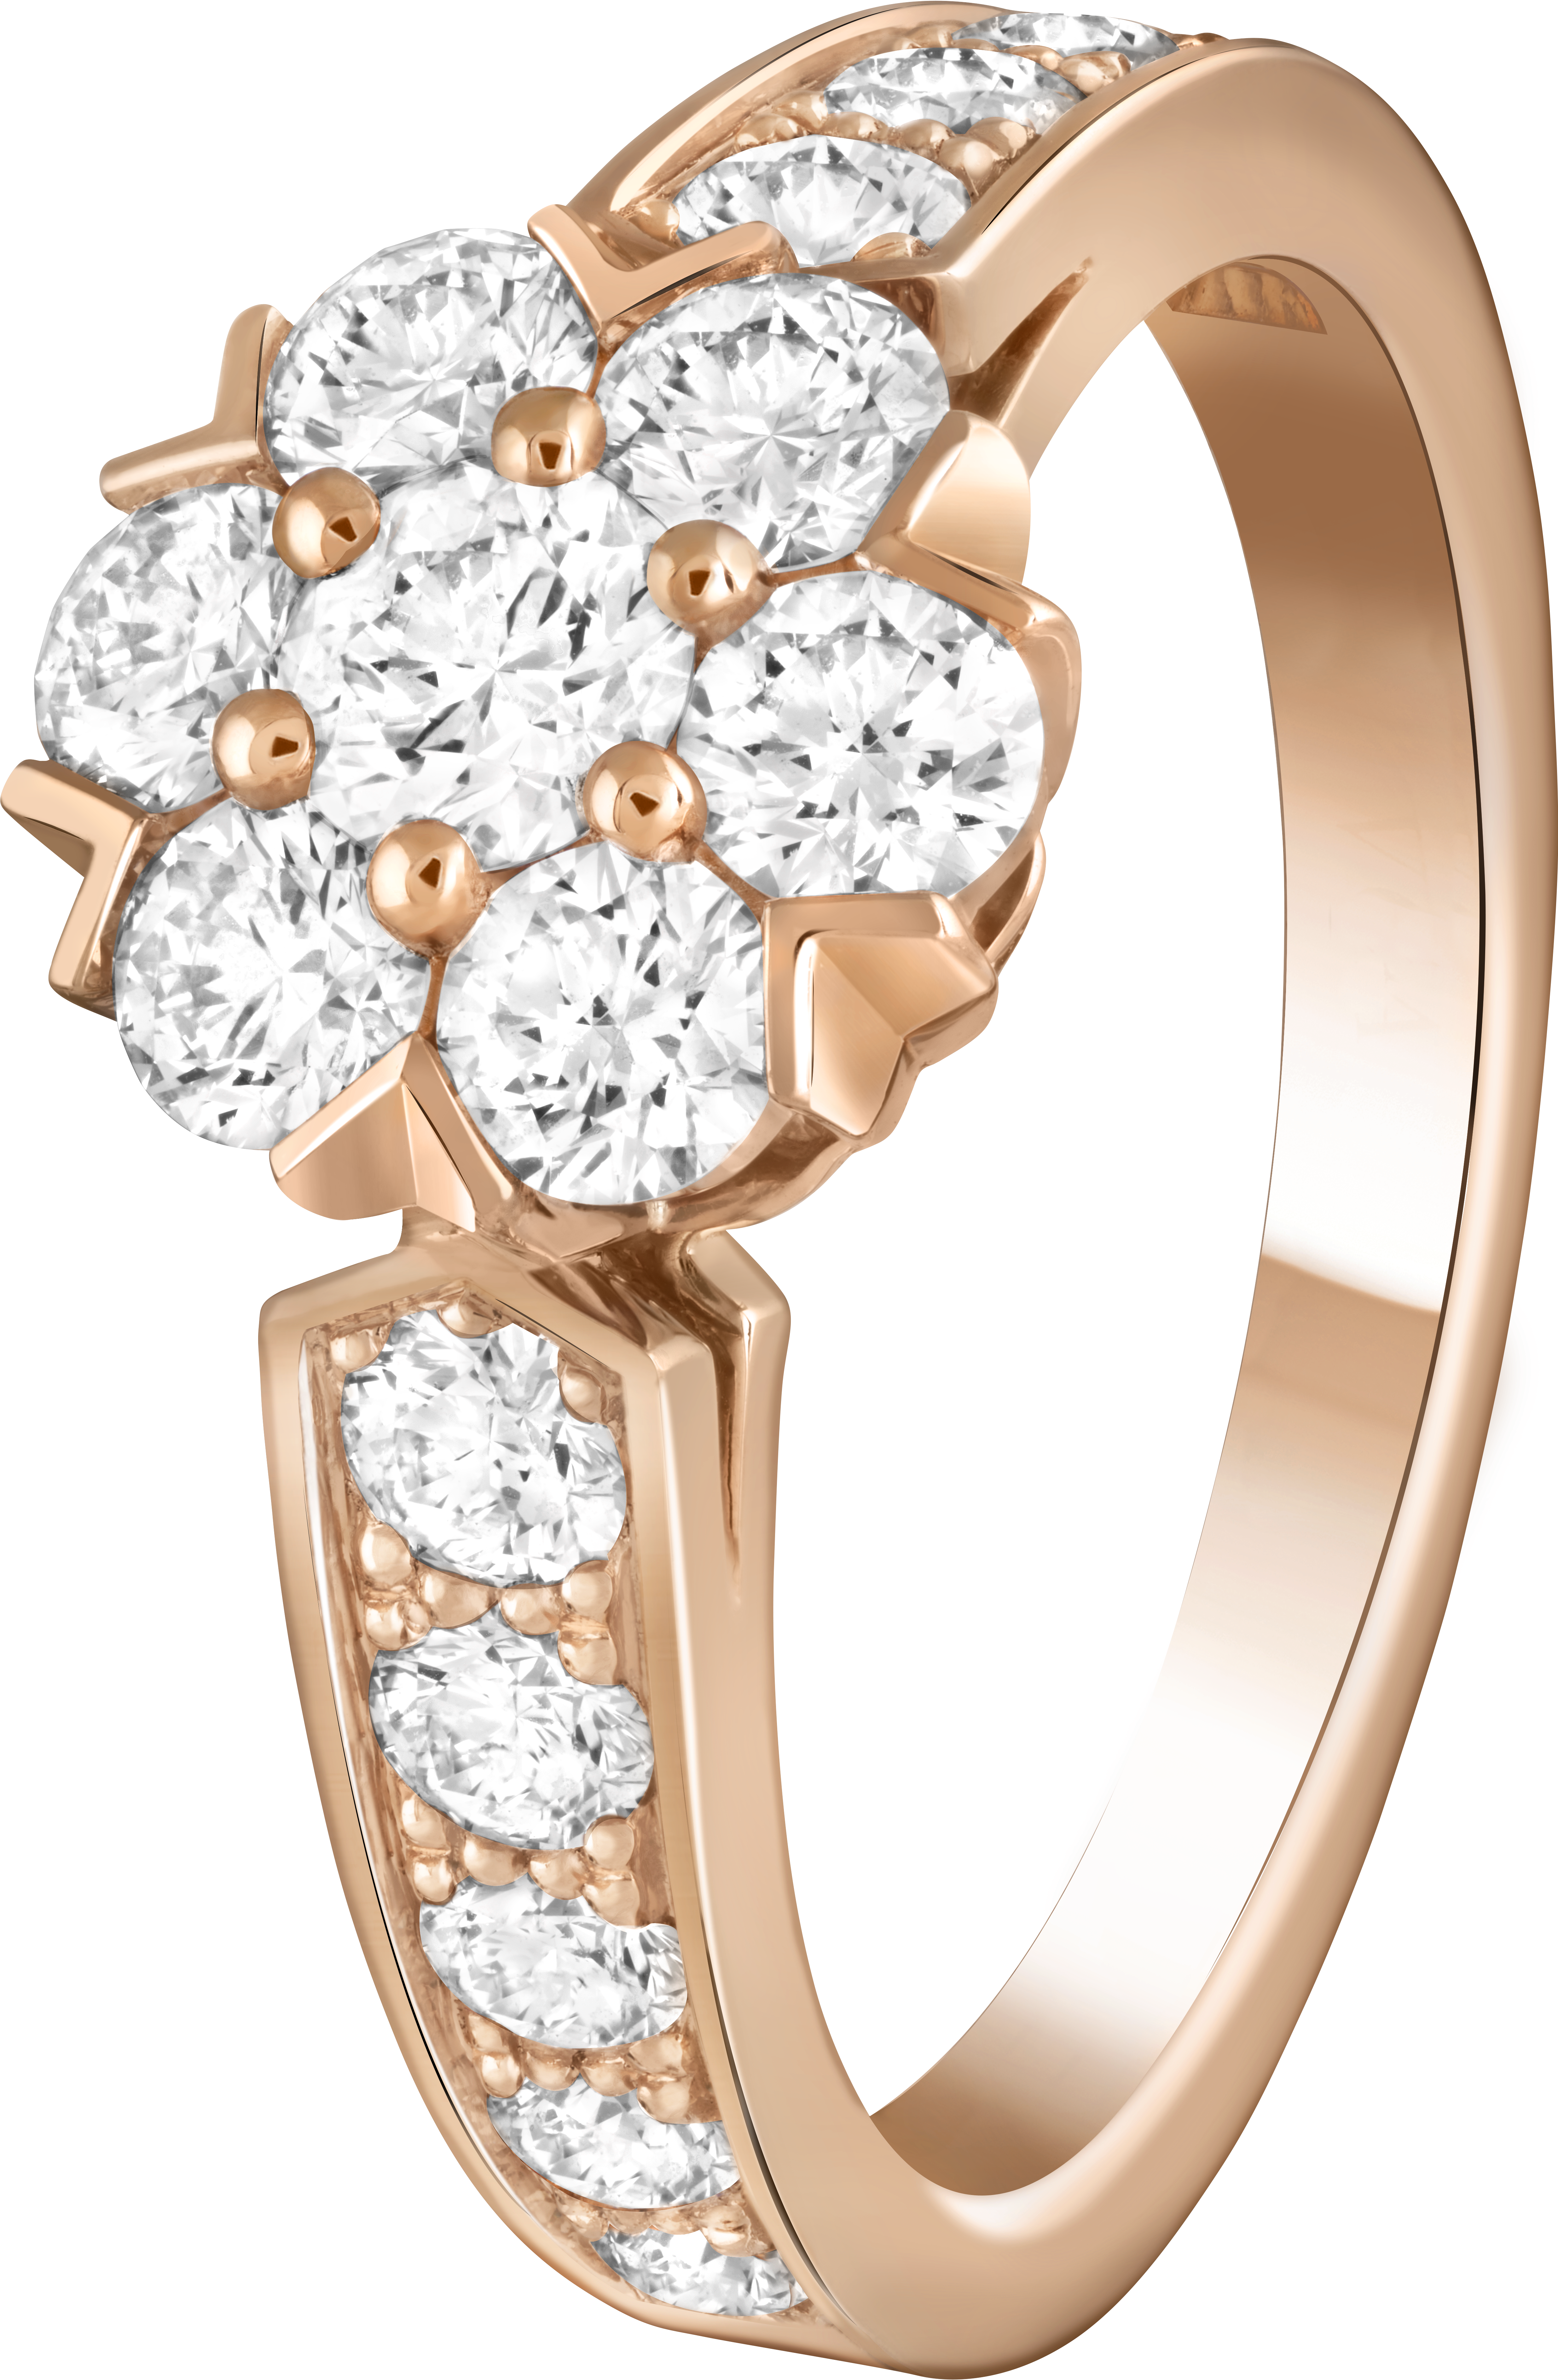 El cuerpo ensanchado del anillo -también conocido como "cravat" en referencia a la forma de sus extremos- está engastado con diamantes de tamaño decreciente, dando la ilusión de una corola ingrávida que acompaña con elegancia cada gesto.